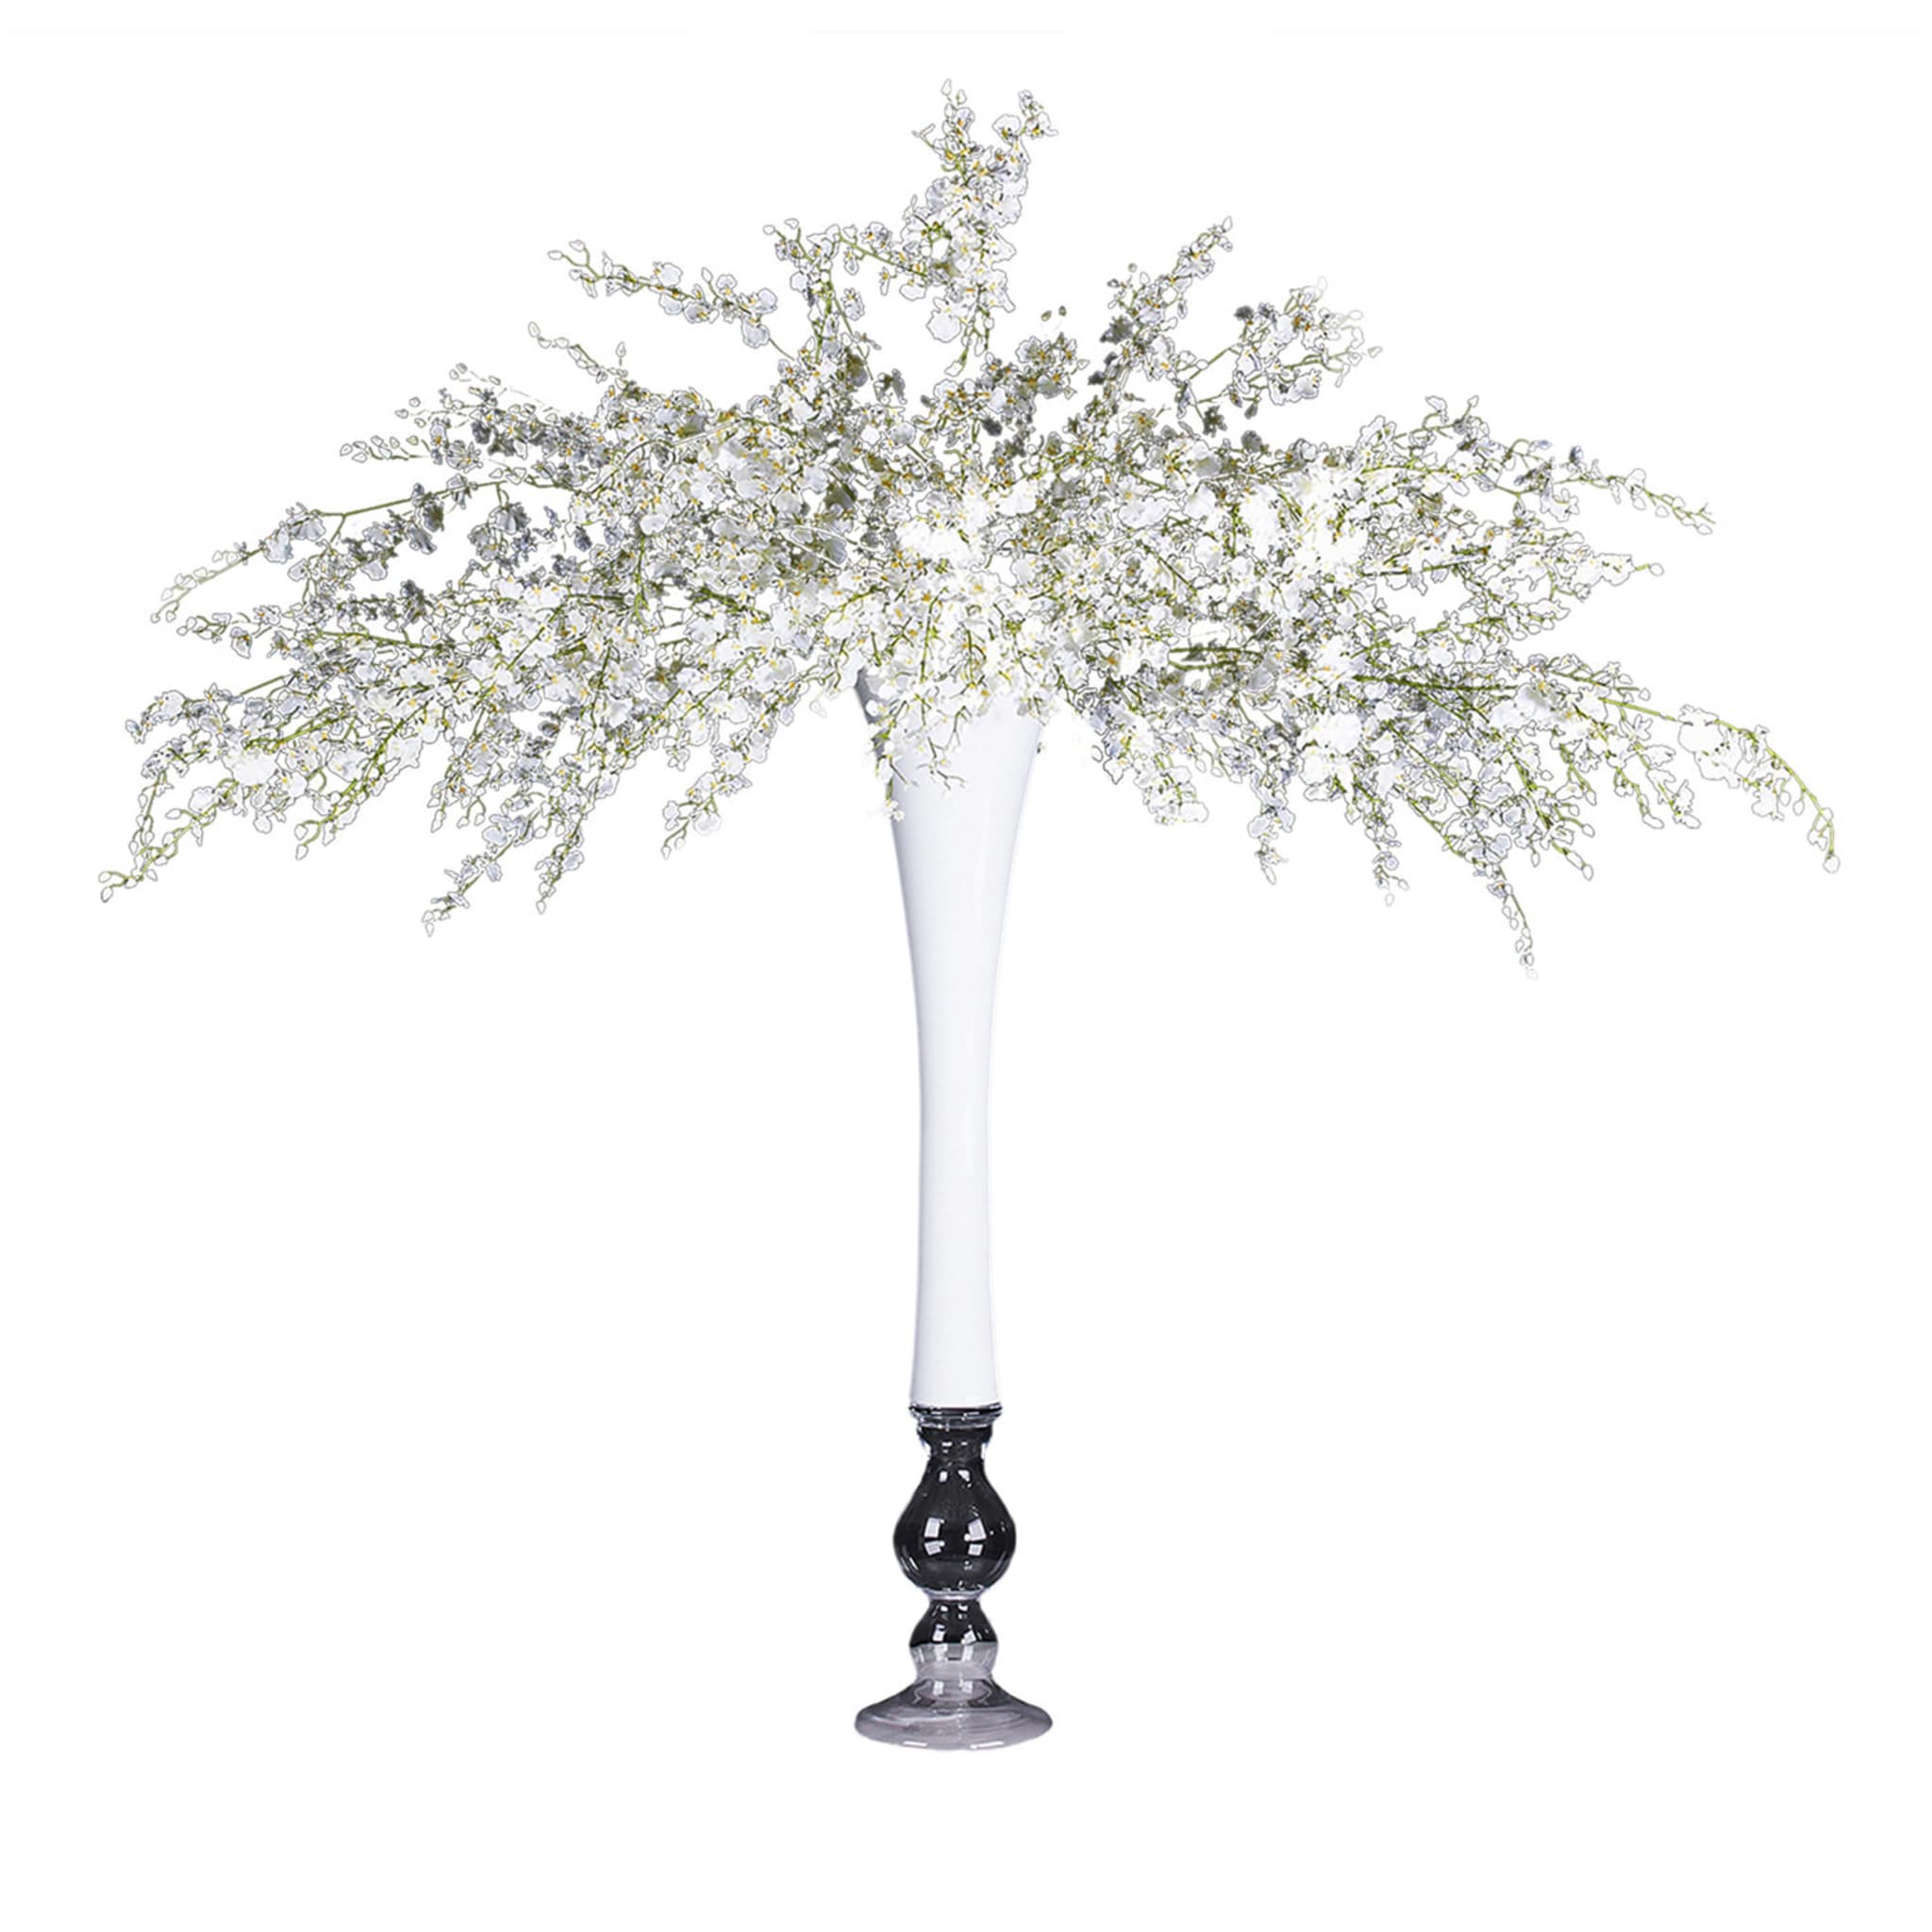 Sayonara Arrangement floral blanc avec vase blanc - Vue principale